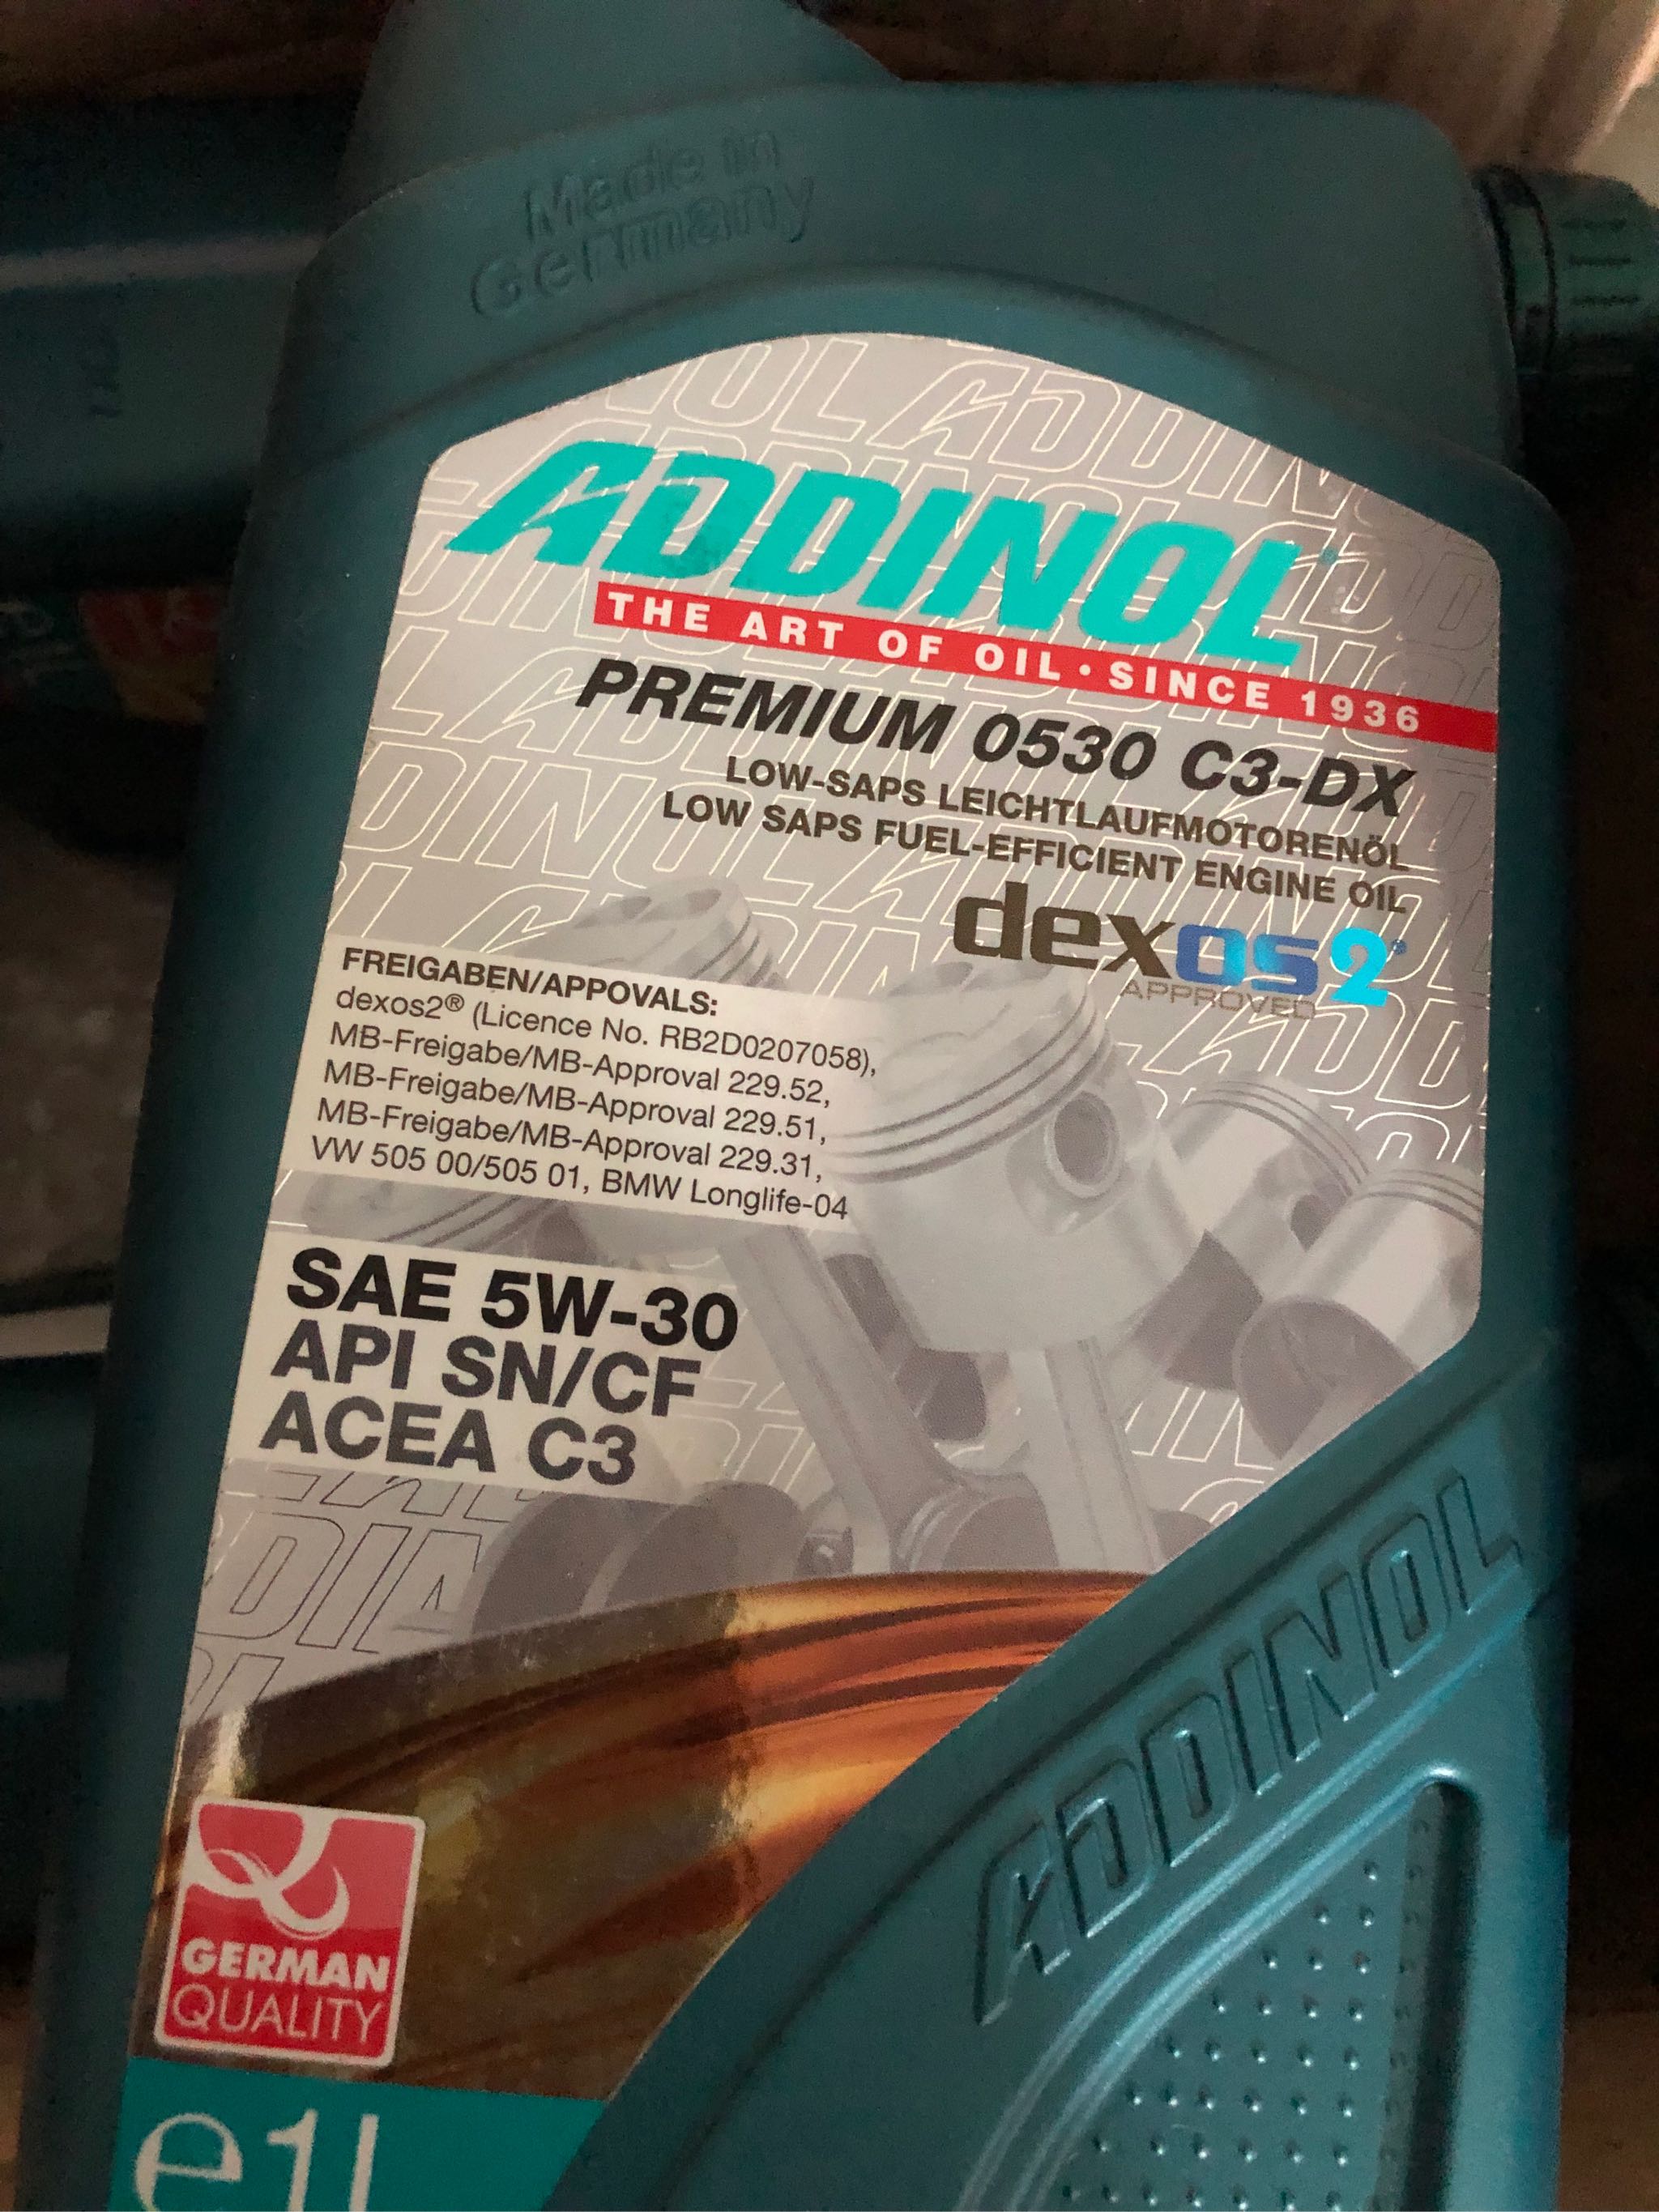 Addinol PREMIUM 05W-30 C3-DX - 1 Liter Engine Oil for car